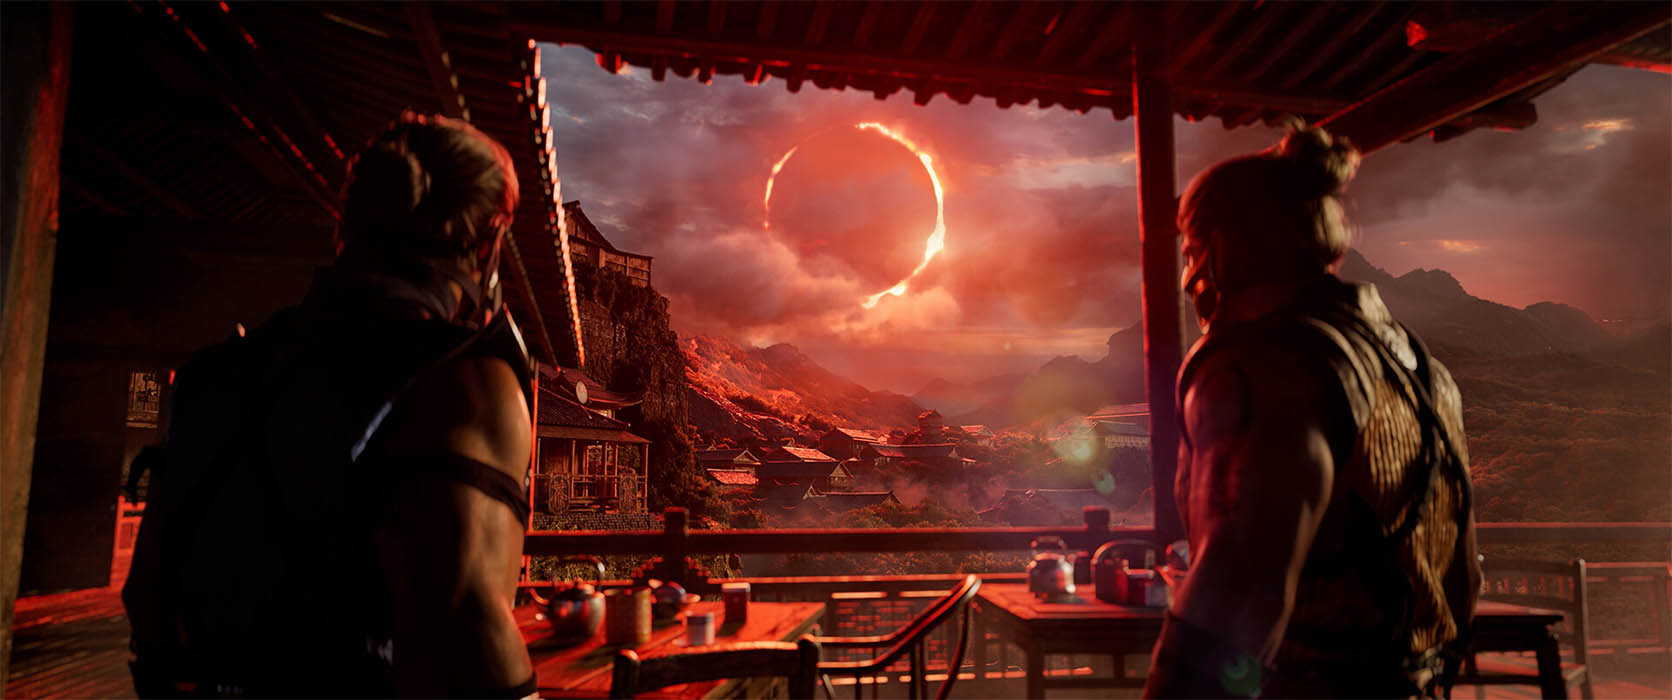 Команда Mortal Kombat 1 открыла прием заявок на стресс-тест